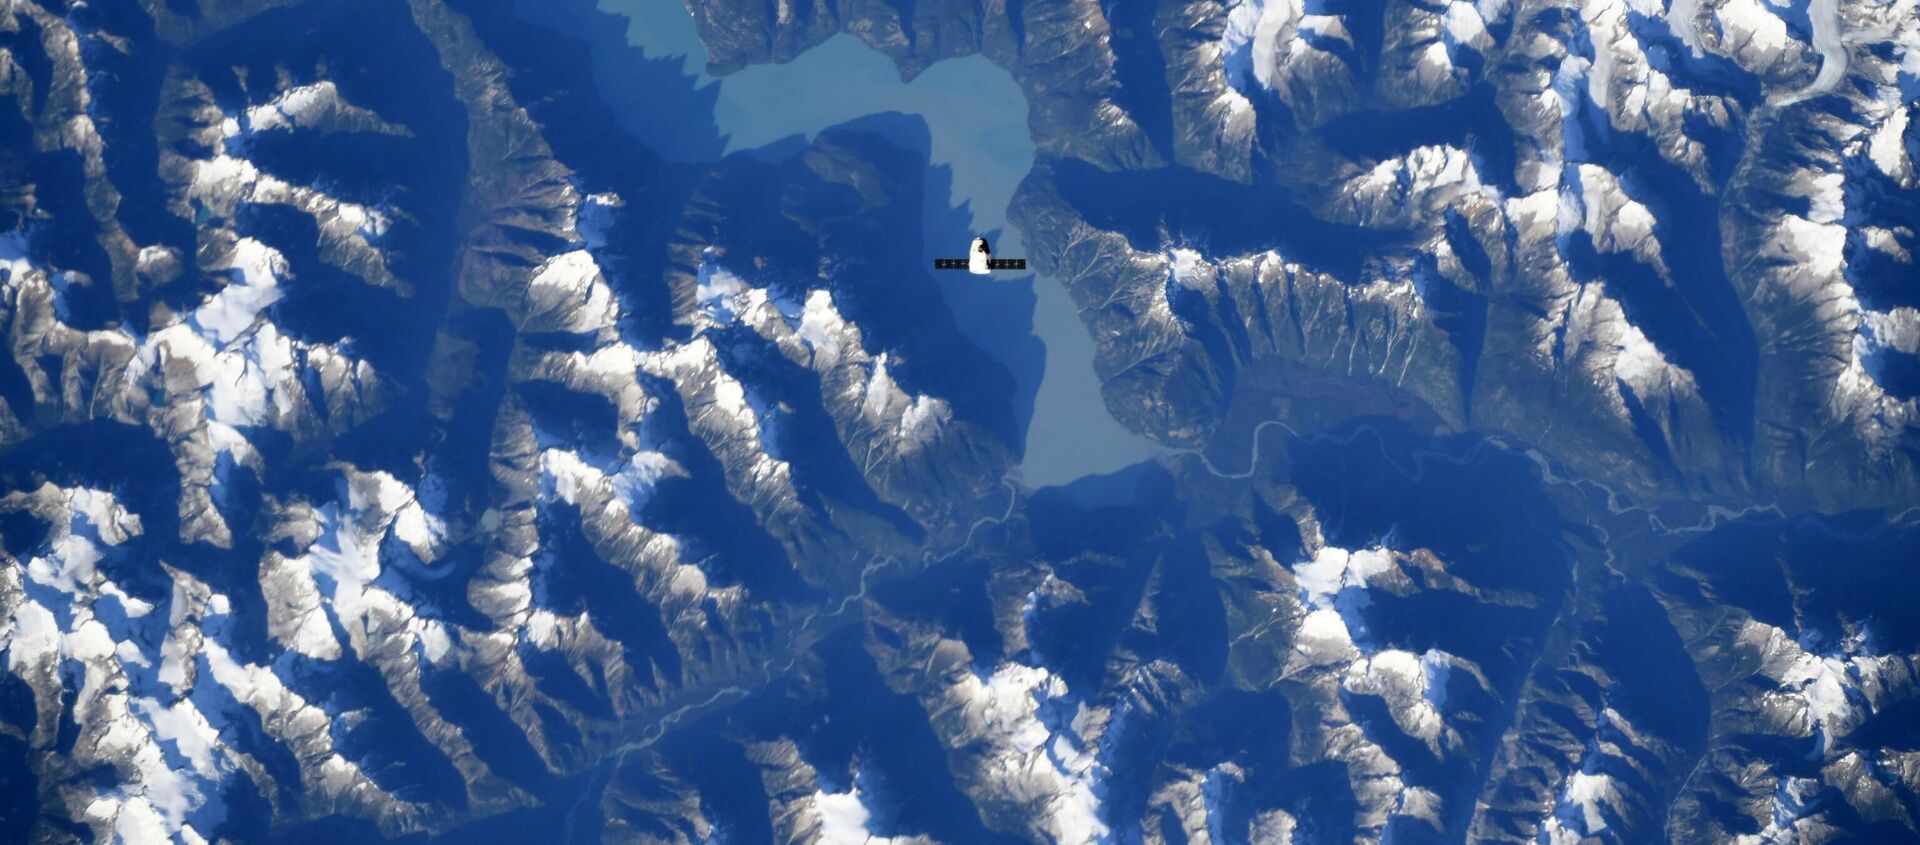 Espaçonave SpaceX Dragon vislumbra paisagem das Montanhas Rochosas do Canadá - Sputnik Brasil, 1920, 29.07.2021